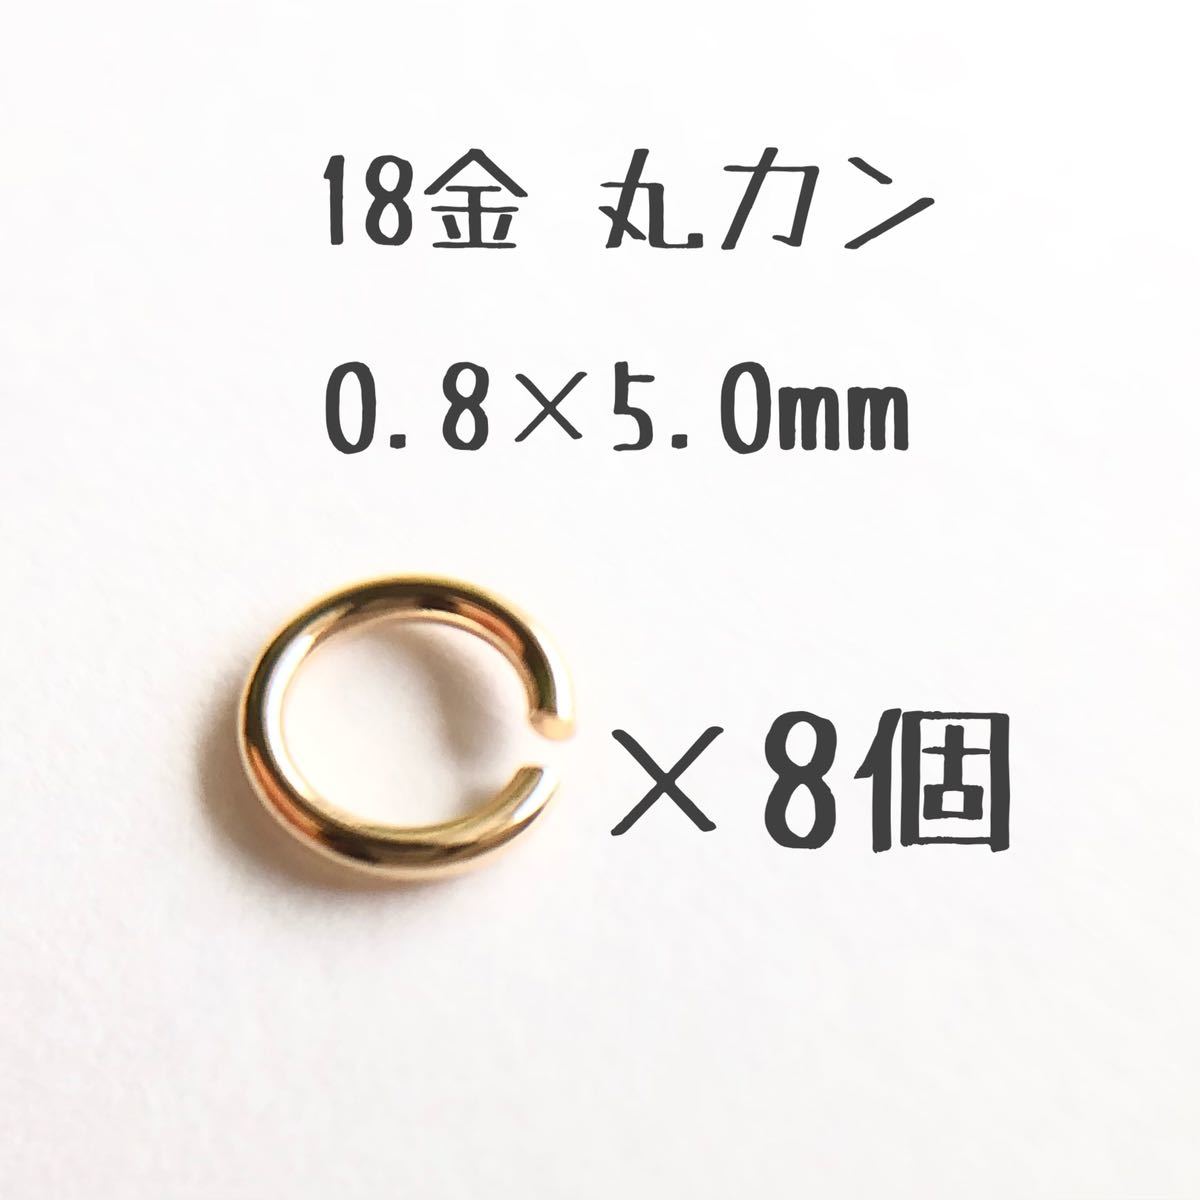 『1年保証』 18金丸カン 外径5.0mm 線径0.8mm 素材 k18アクセサリーパーツマルカン18k 日本製 8個売り 0.8×5.0mm 金属パーツ